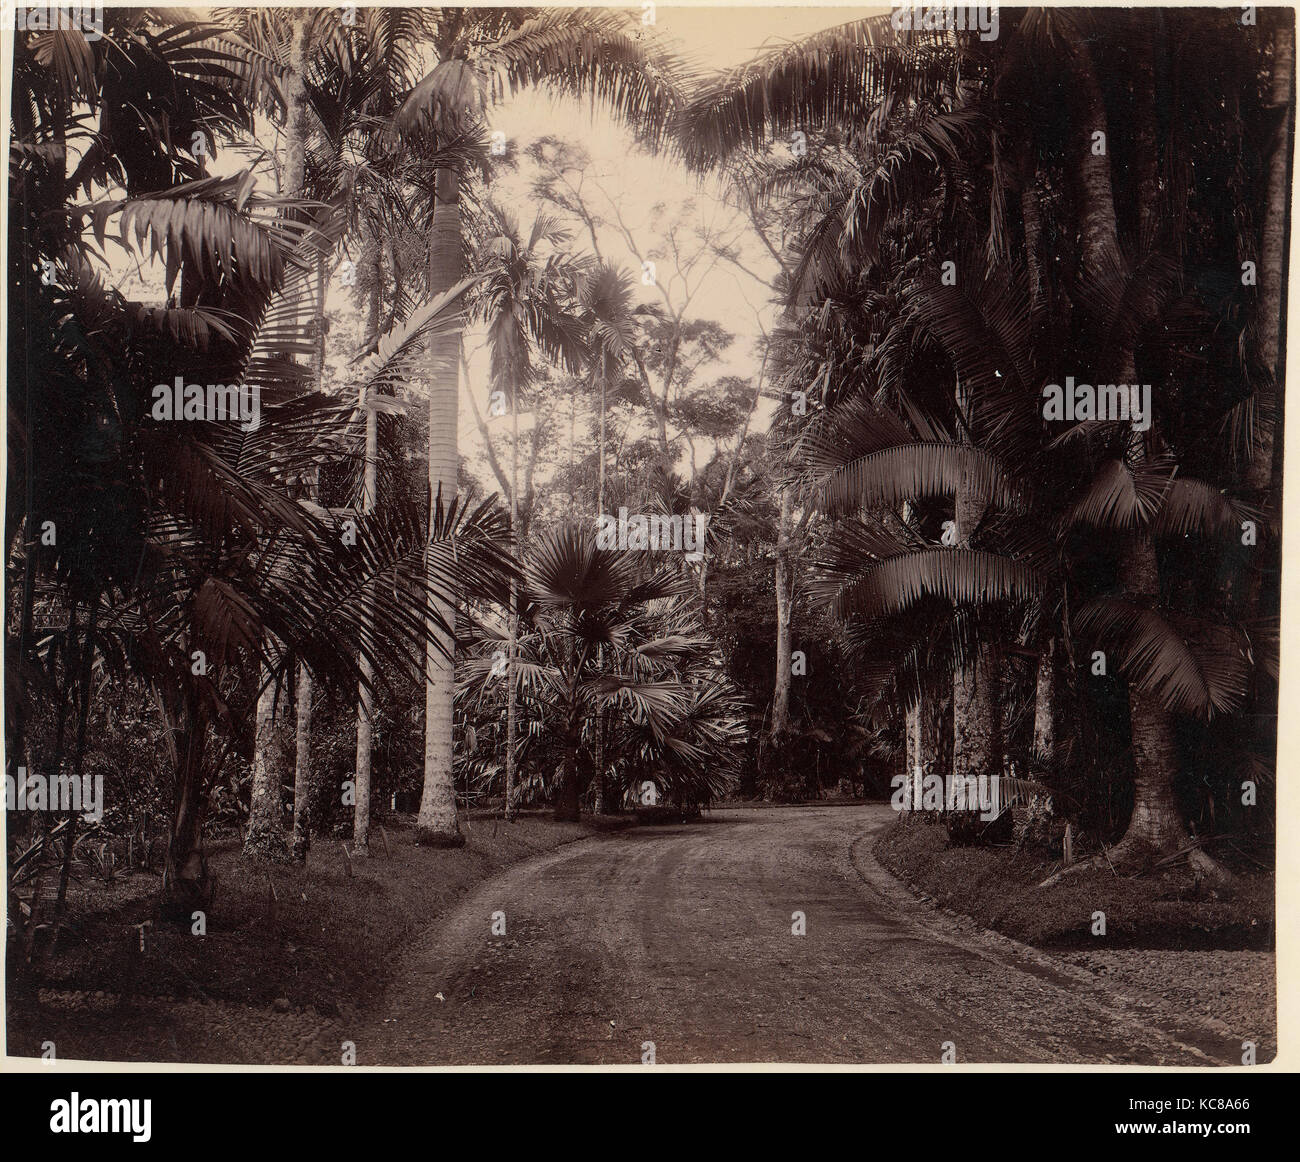 Groupe Palm, Bvitenzorg, Java, les années 1860-1970, à l'albumine argentique de négatif sur verre, 22,5 x 27,1 cm (8 7/8 x 10 11/16 po Banque D'Images